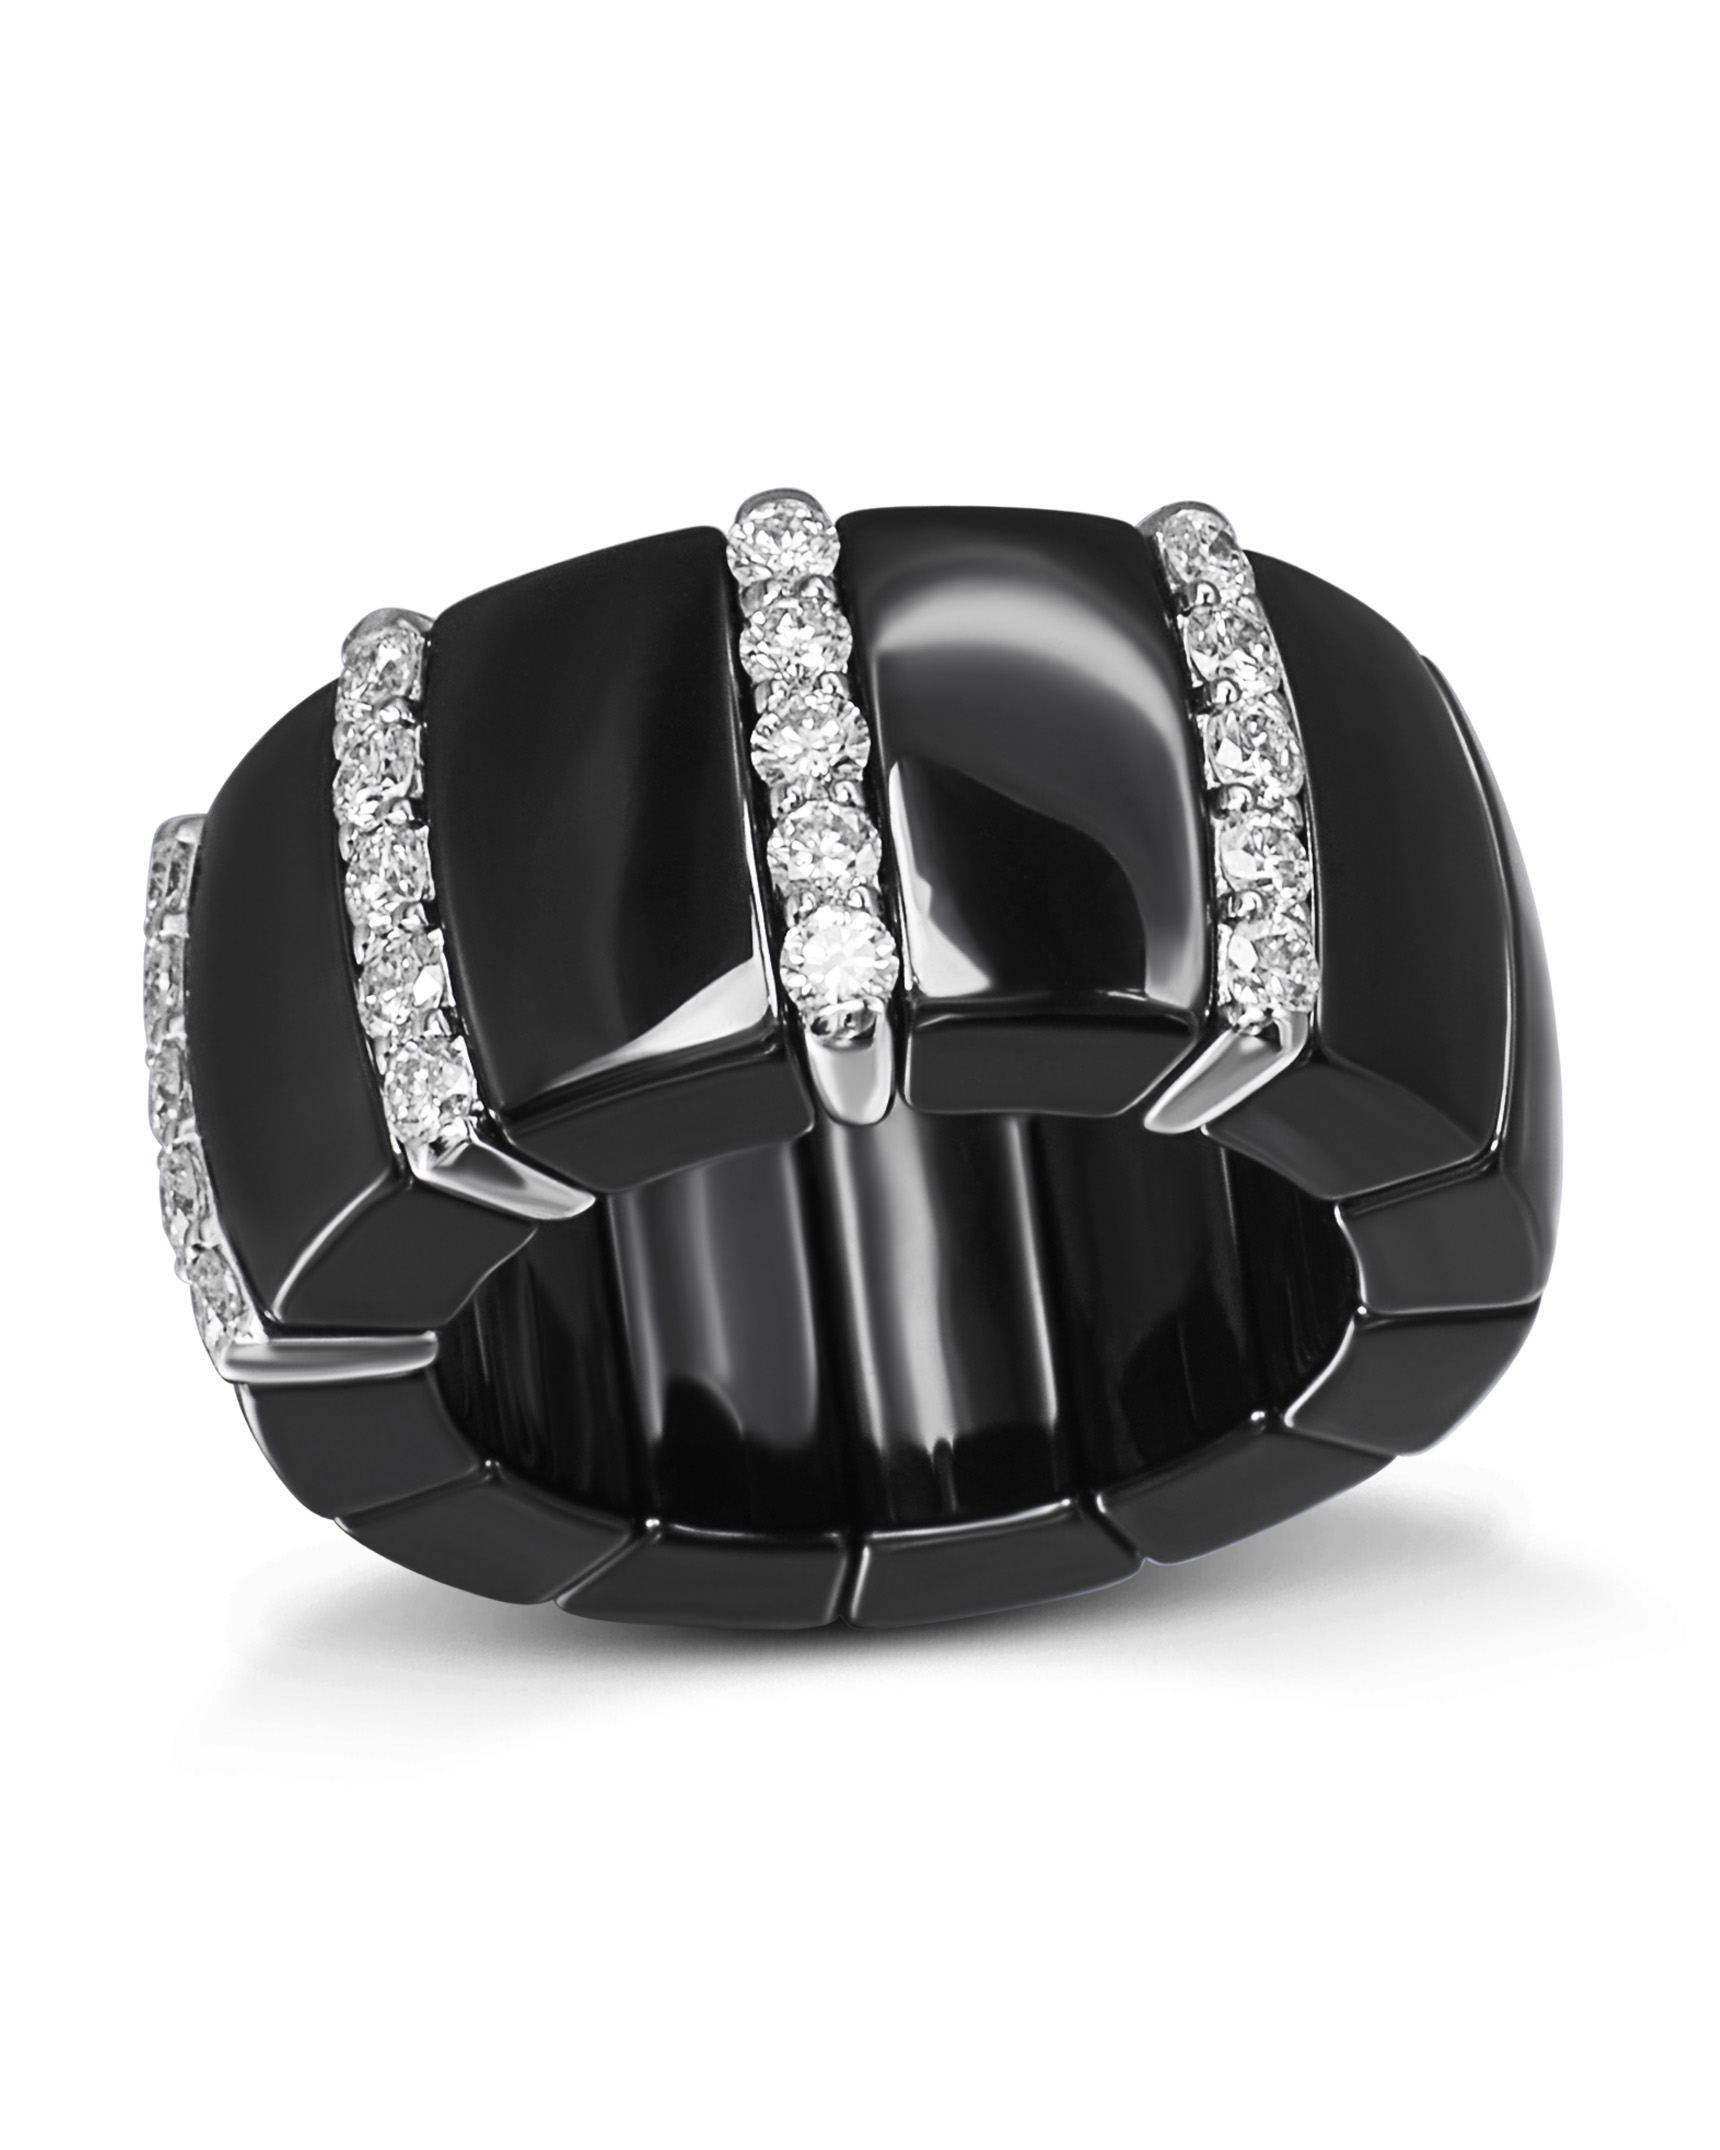 A flexible diamond ring. - Bukowskis